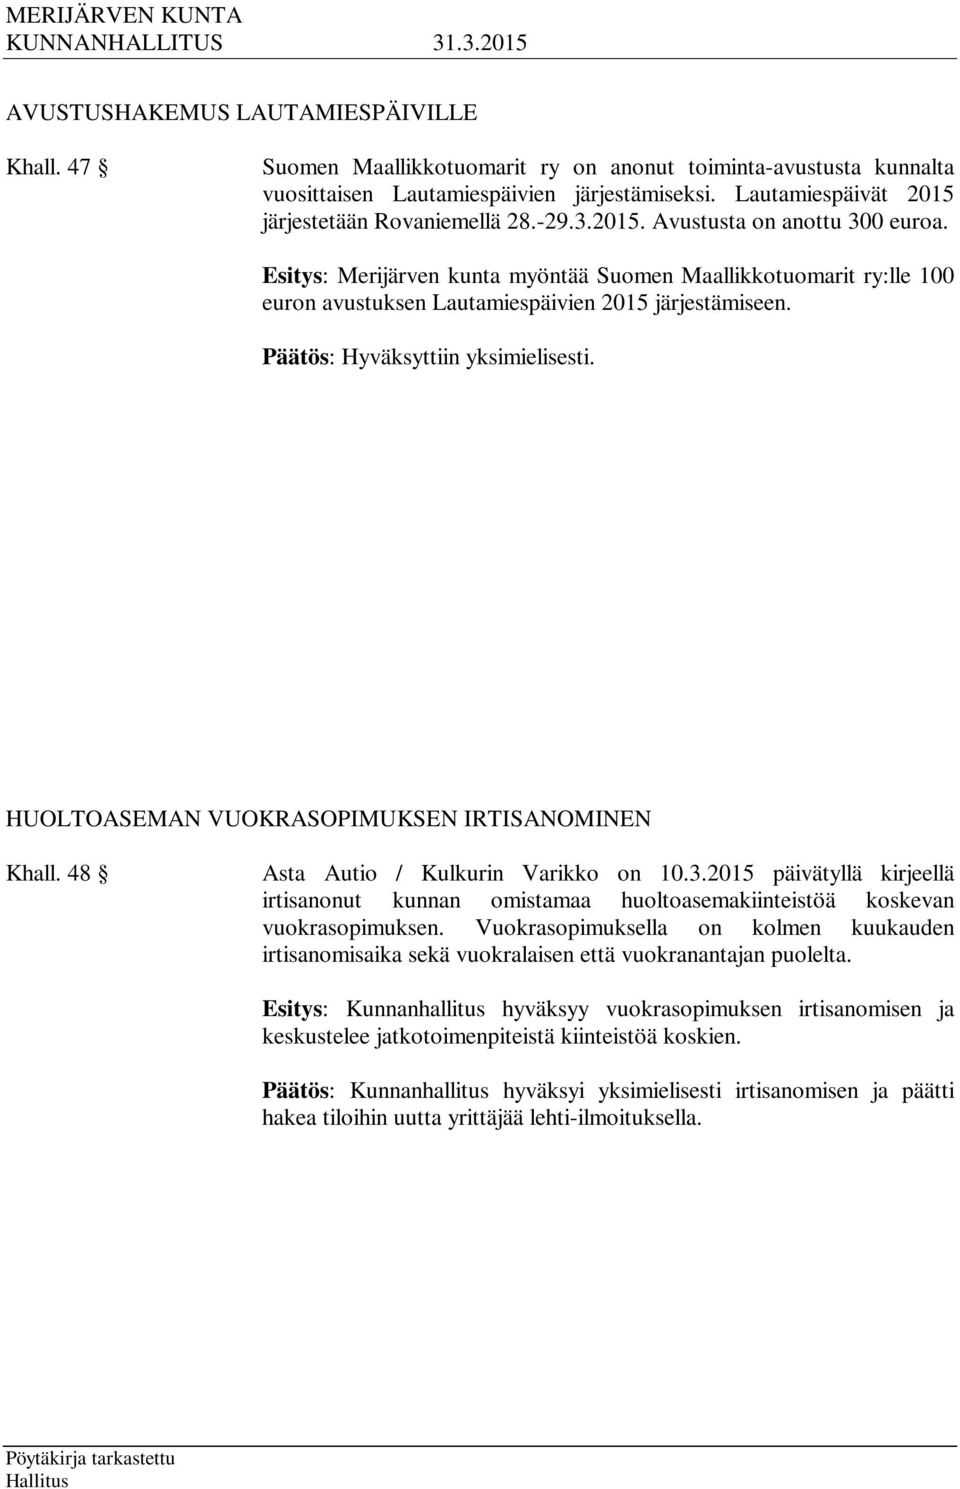 Esitys: Merijärven kunta myöntää Suomen Maallikkotuomarit ry:lle 100 euron avustuksen Lautamiespäivien 2015 järjestämiseen. HUOLTOASEMAN VUOKRASOPIMUKSEN IRTISANOMINEN Khall.